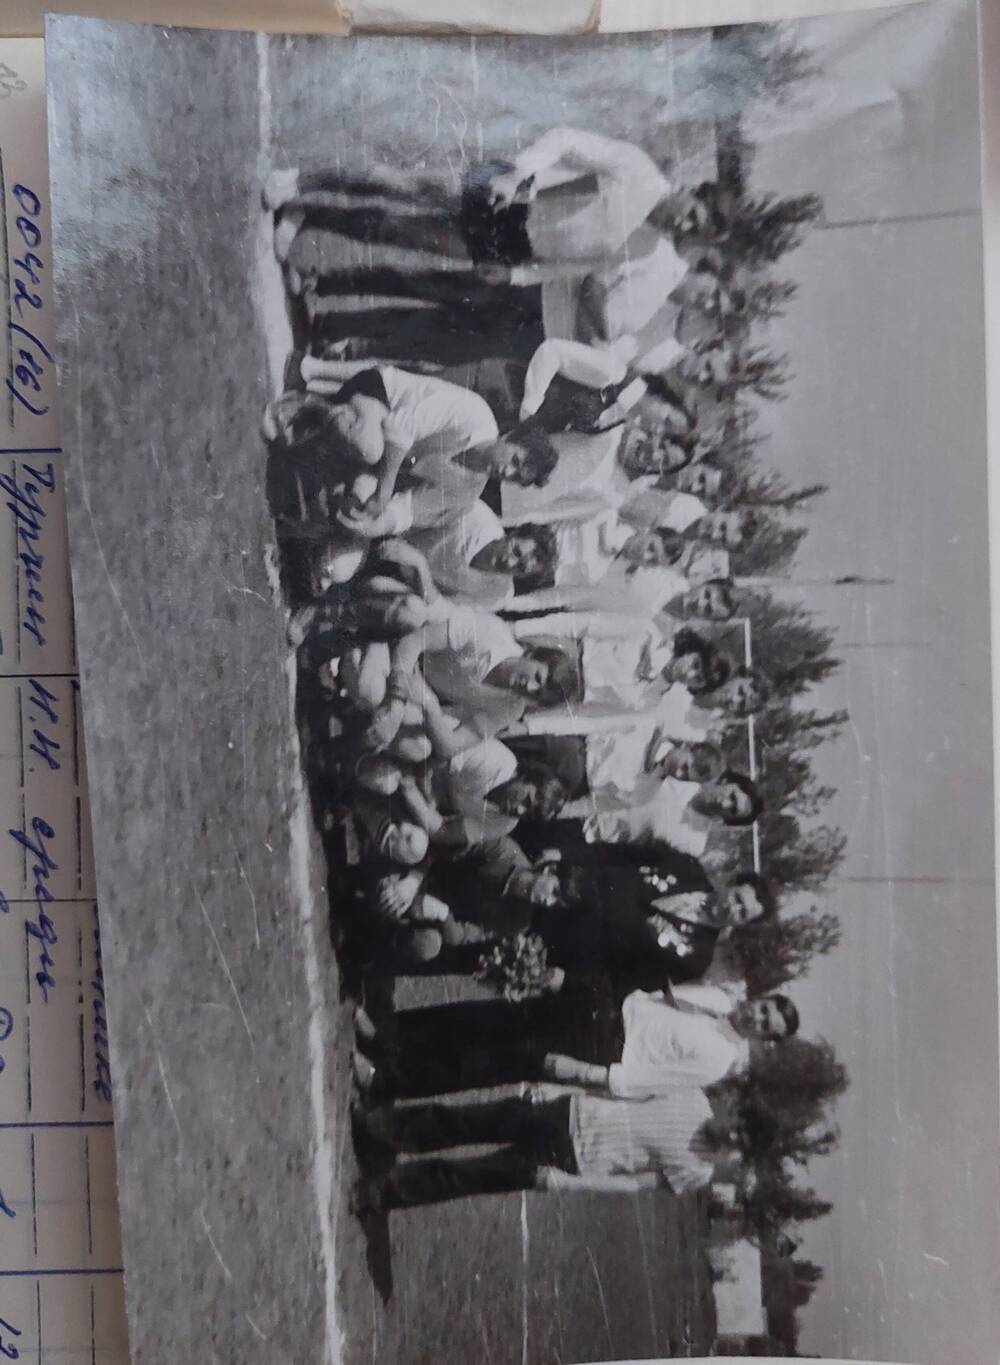 Фото ч/б Турчин Н.Н. среди футболистов г.Донецка 1972г.